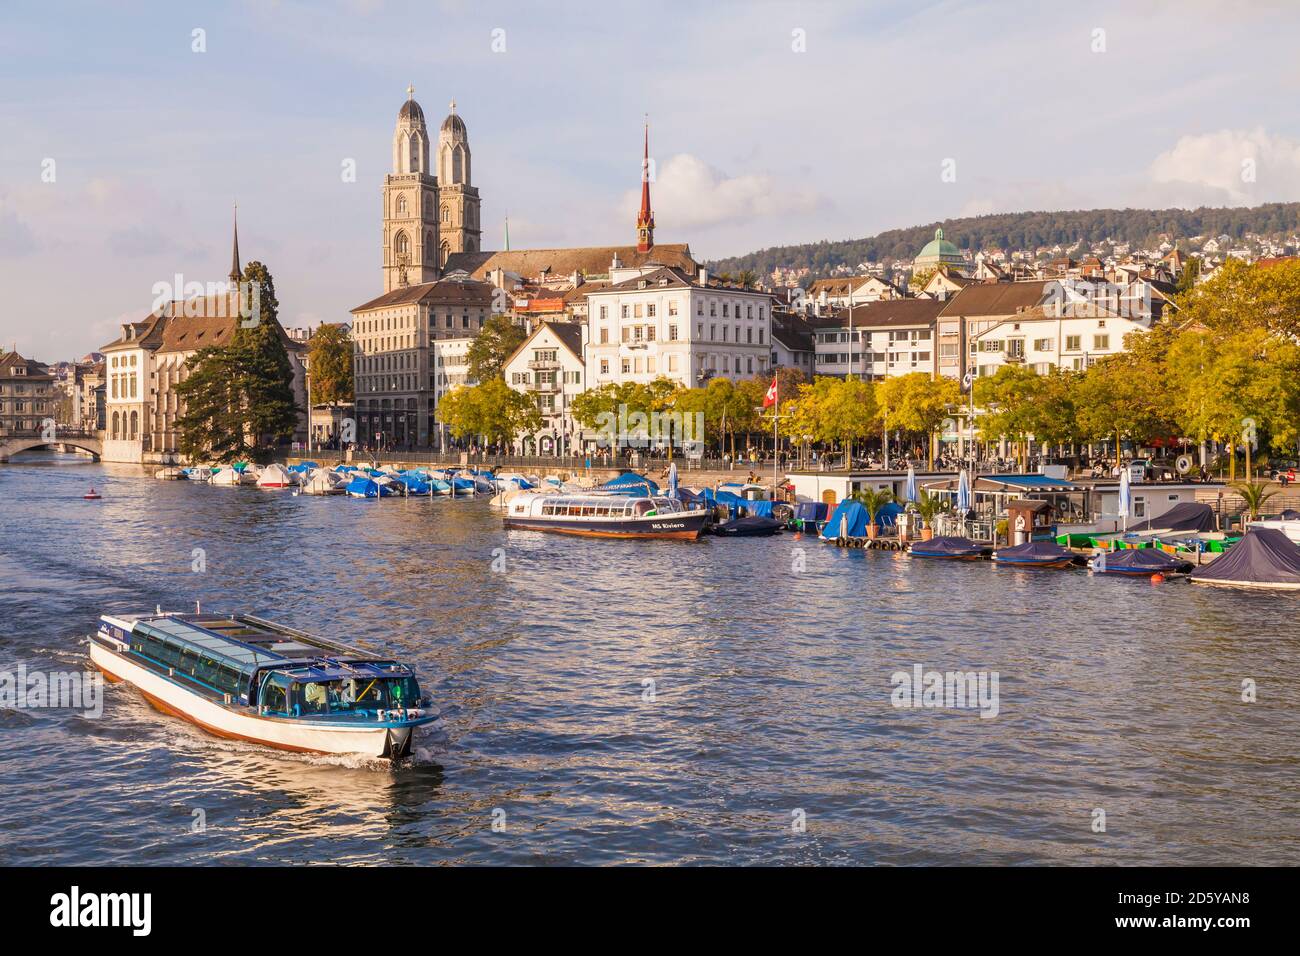 Suisse, Zurich, vue de ville avec tourboat sur département en premier plan Banque D'Images